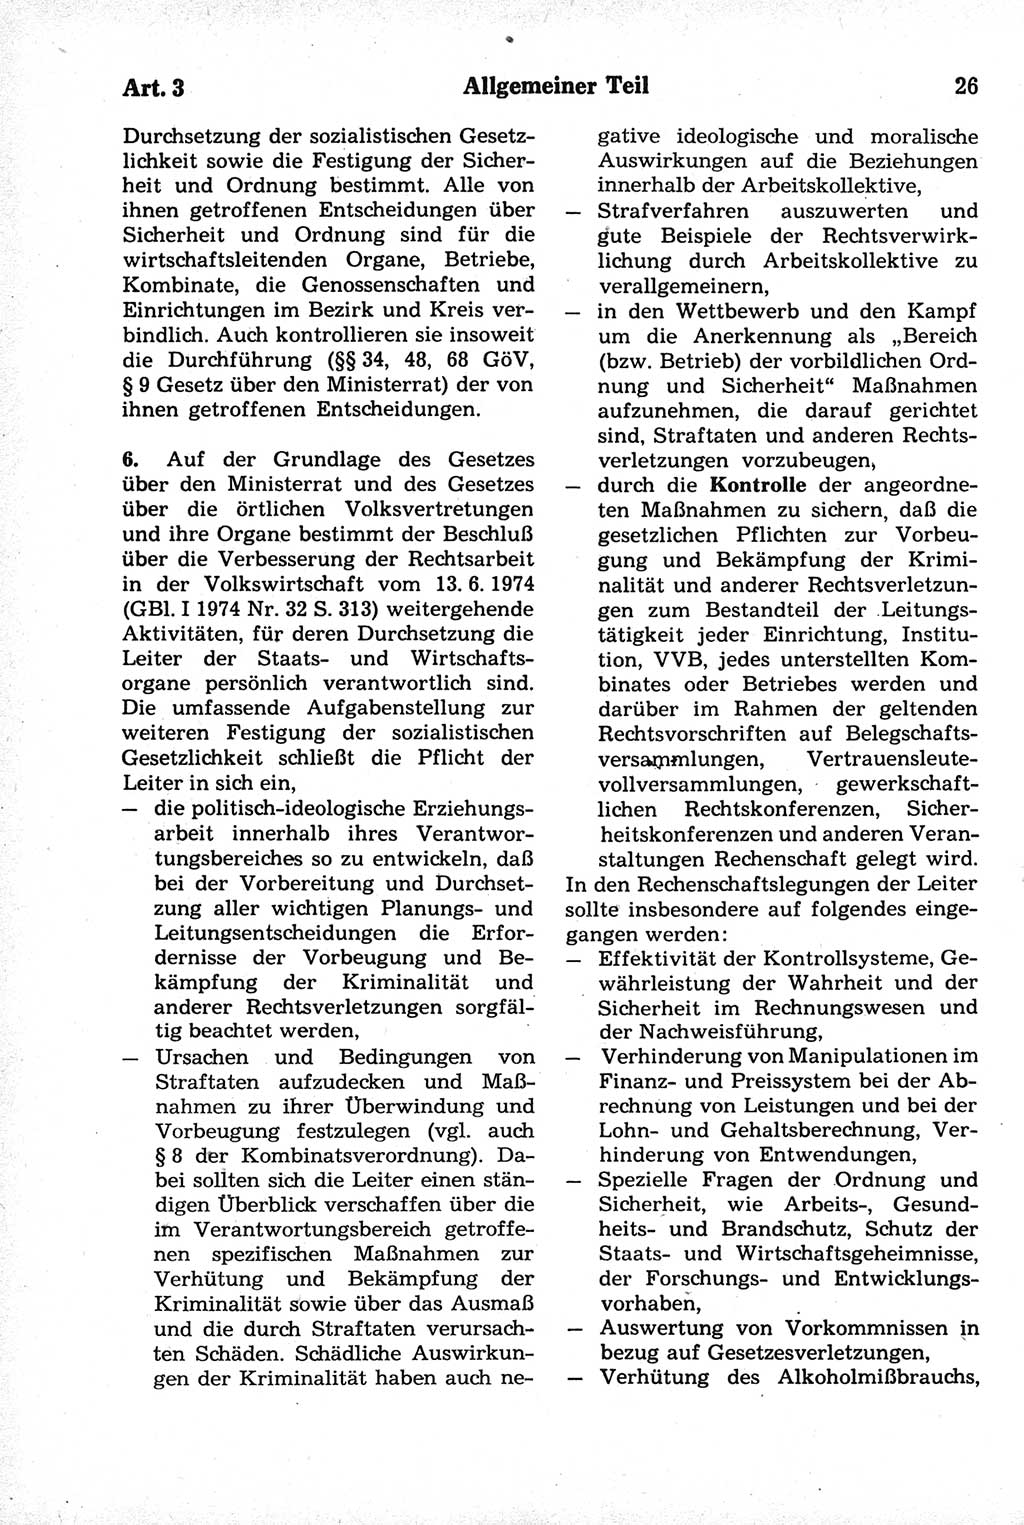 Strafrecht der Deutschen Demokratischen Republik (DDR), Kommentar zum Strafgesetzbuch (StGB) 1981, Seite 26 (Strafr. DDR Komm. StGB 1981, S. 26)